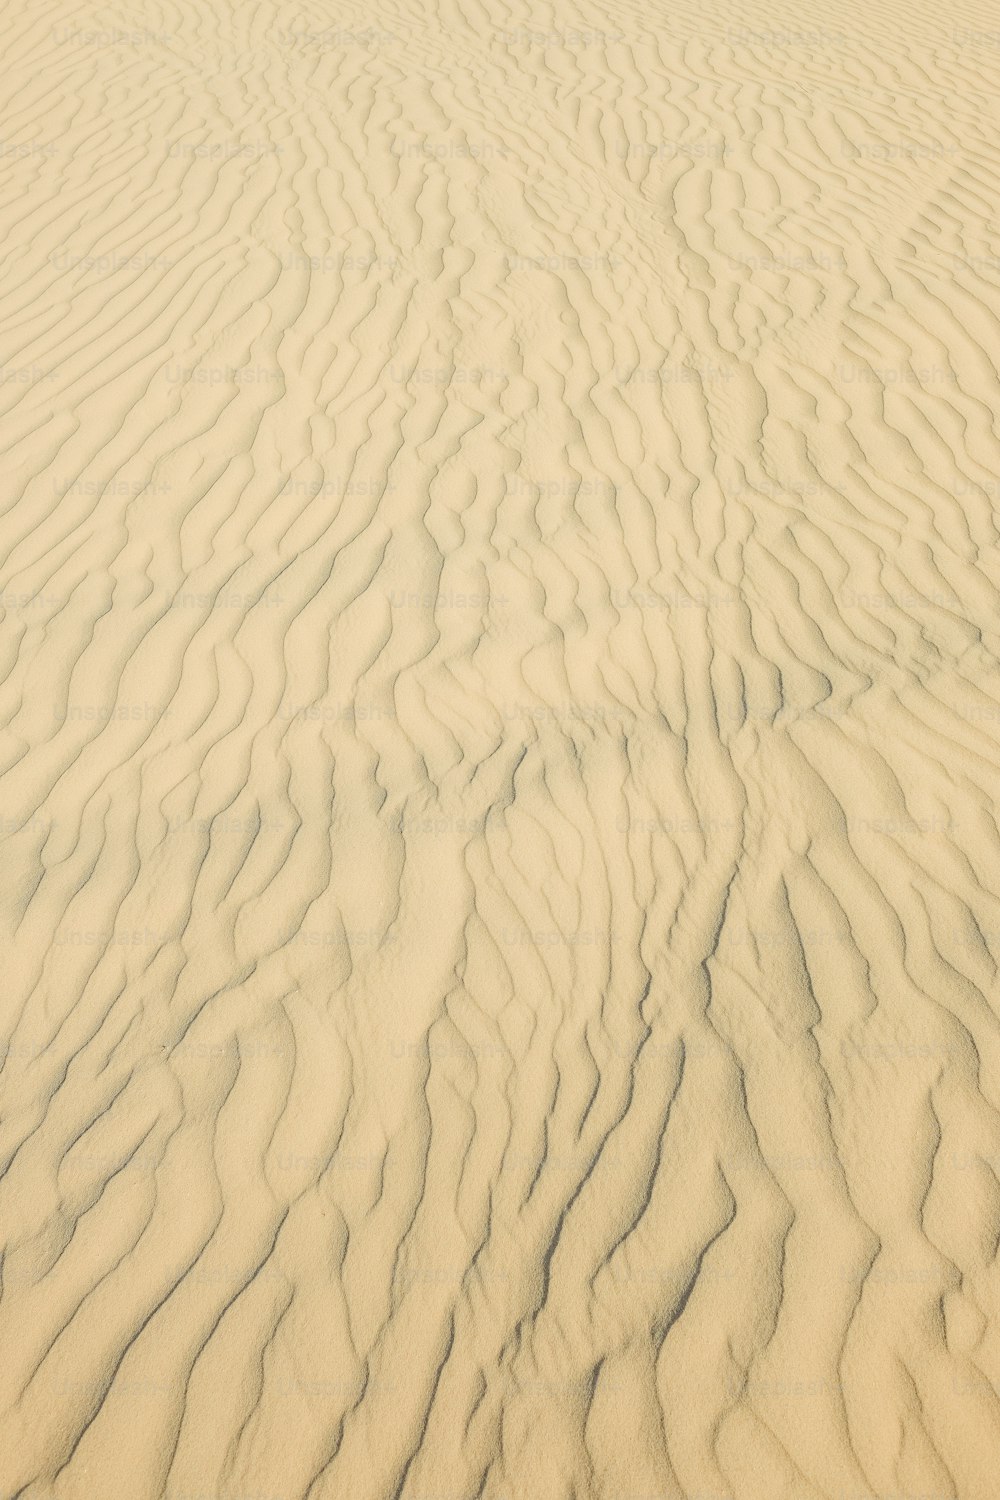 Un primer plano de una duna de arena